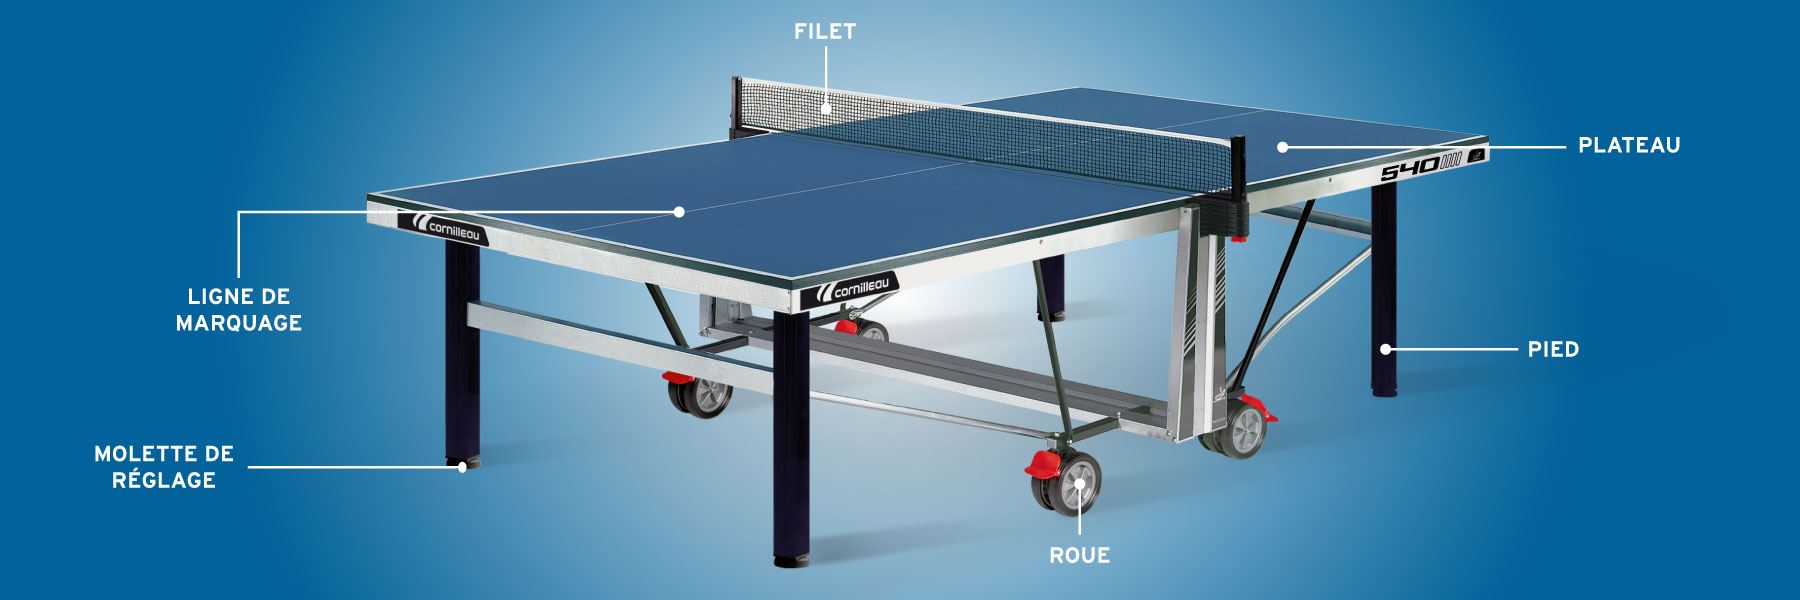 Choisir sa table Tennis de Table - Sports Raquettes